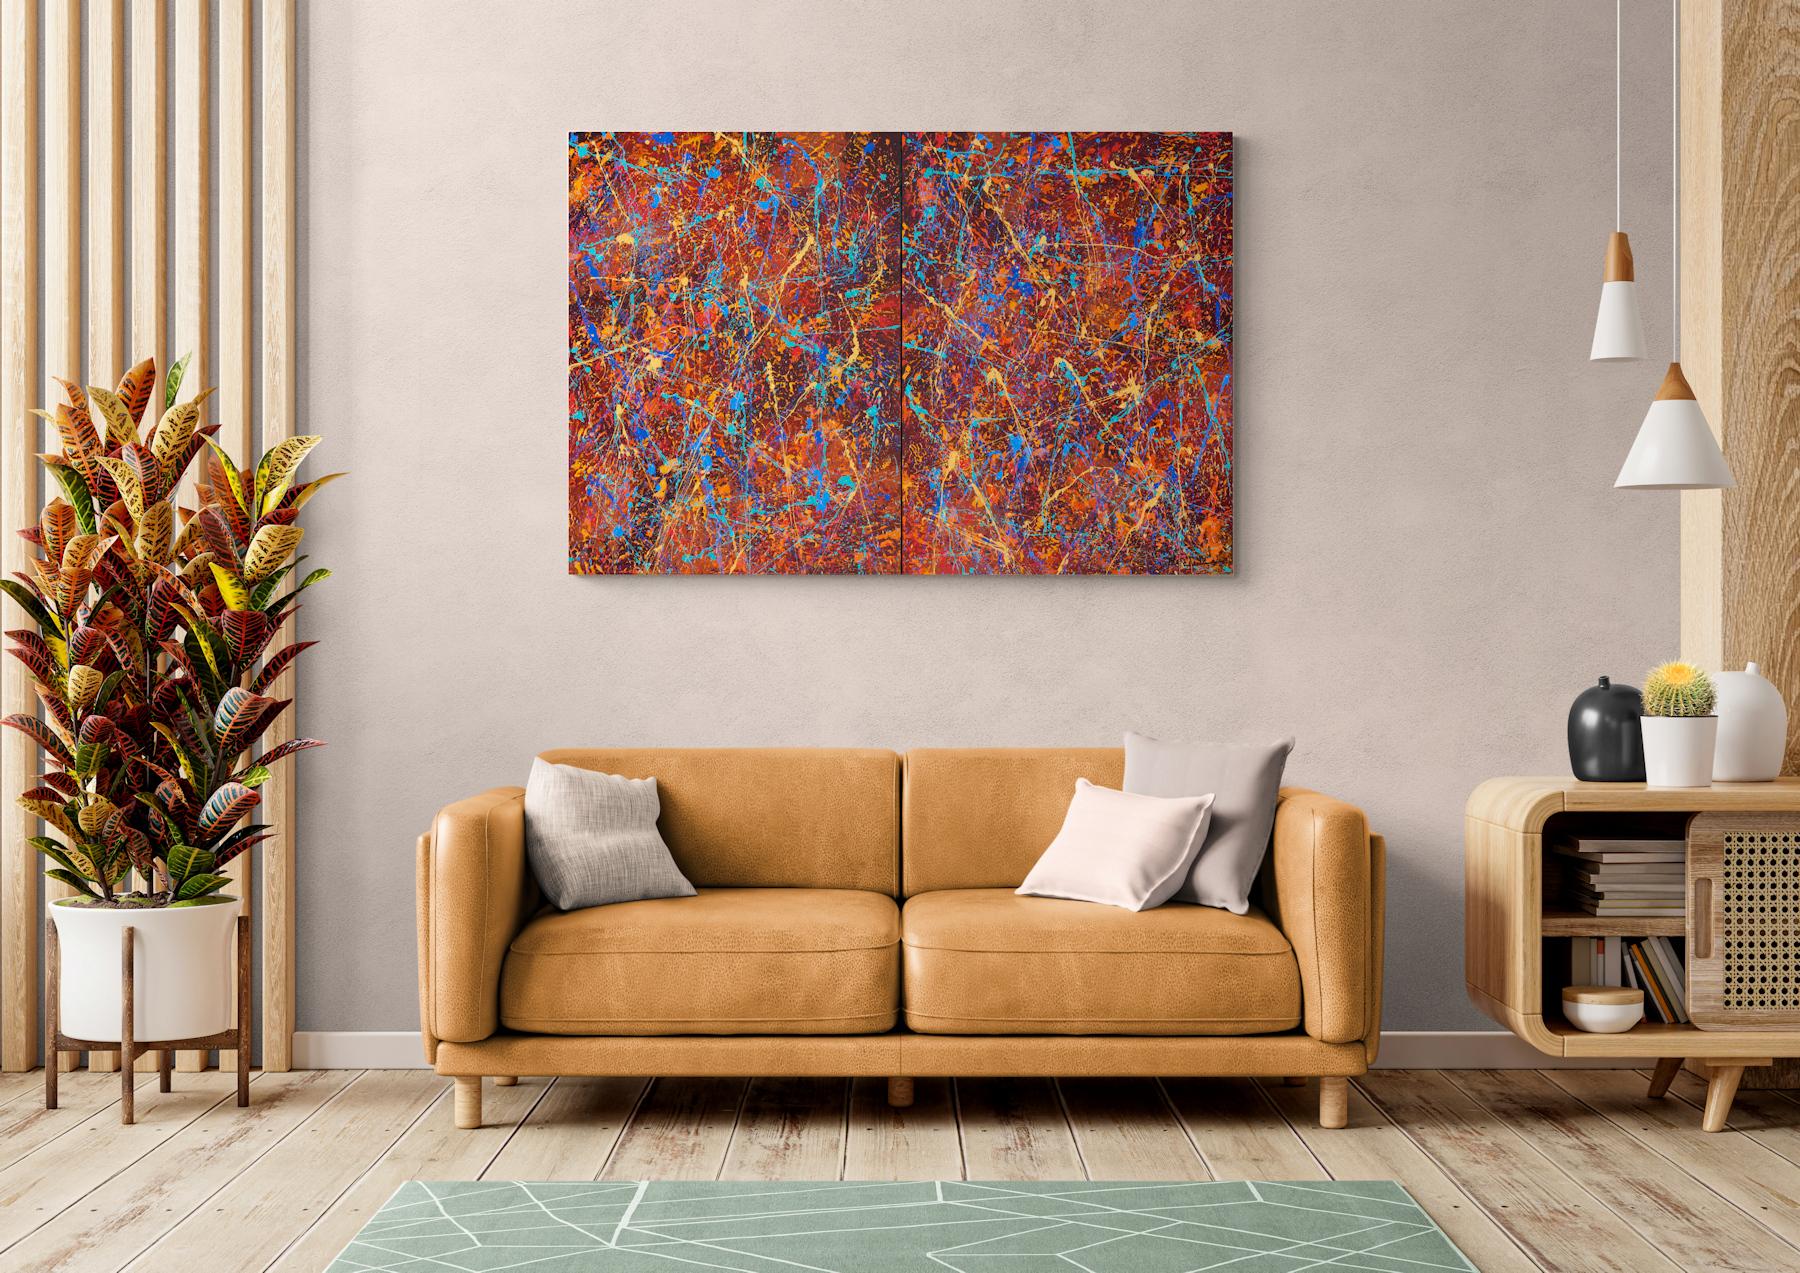 « Color Chaos Diptych », technique mixte abstraite avec texture rouge, orange, bleu - Painting de Nancy Eckels